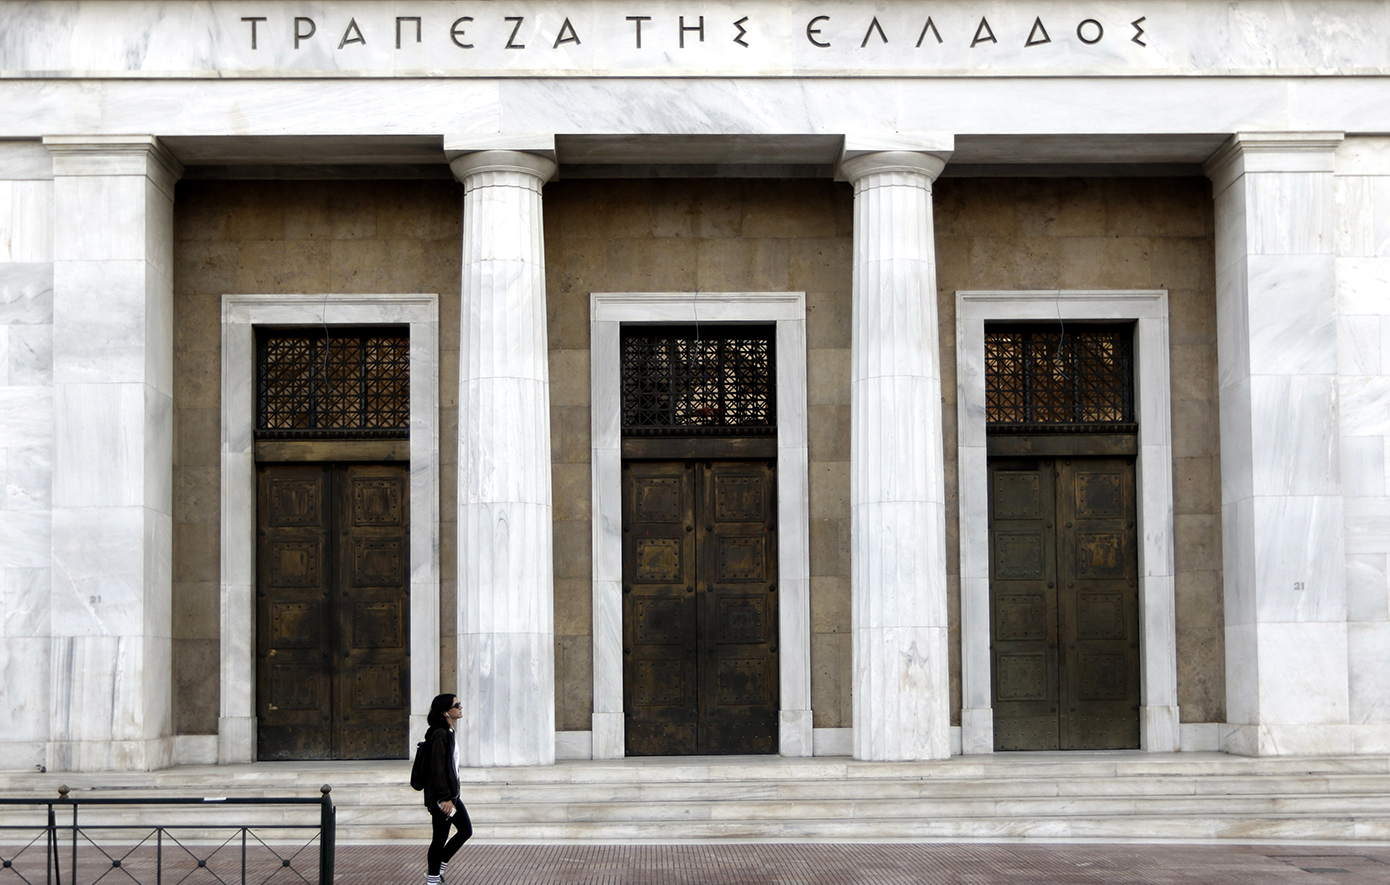 Αυξήθηκαν καταθέσεις και δάνεια τον Μάρτιο, σύμφωνα με την Τράπεζα της Ελλάδος